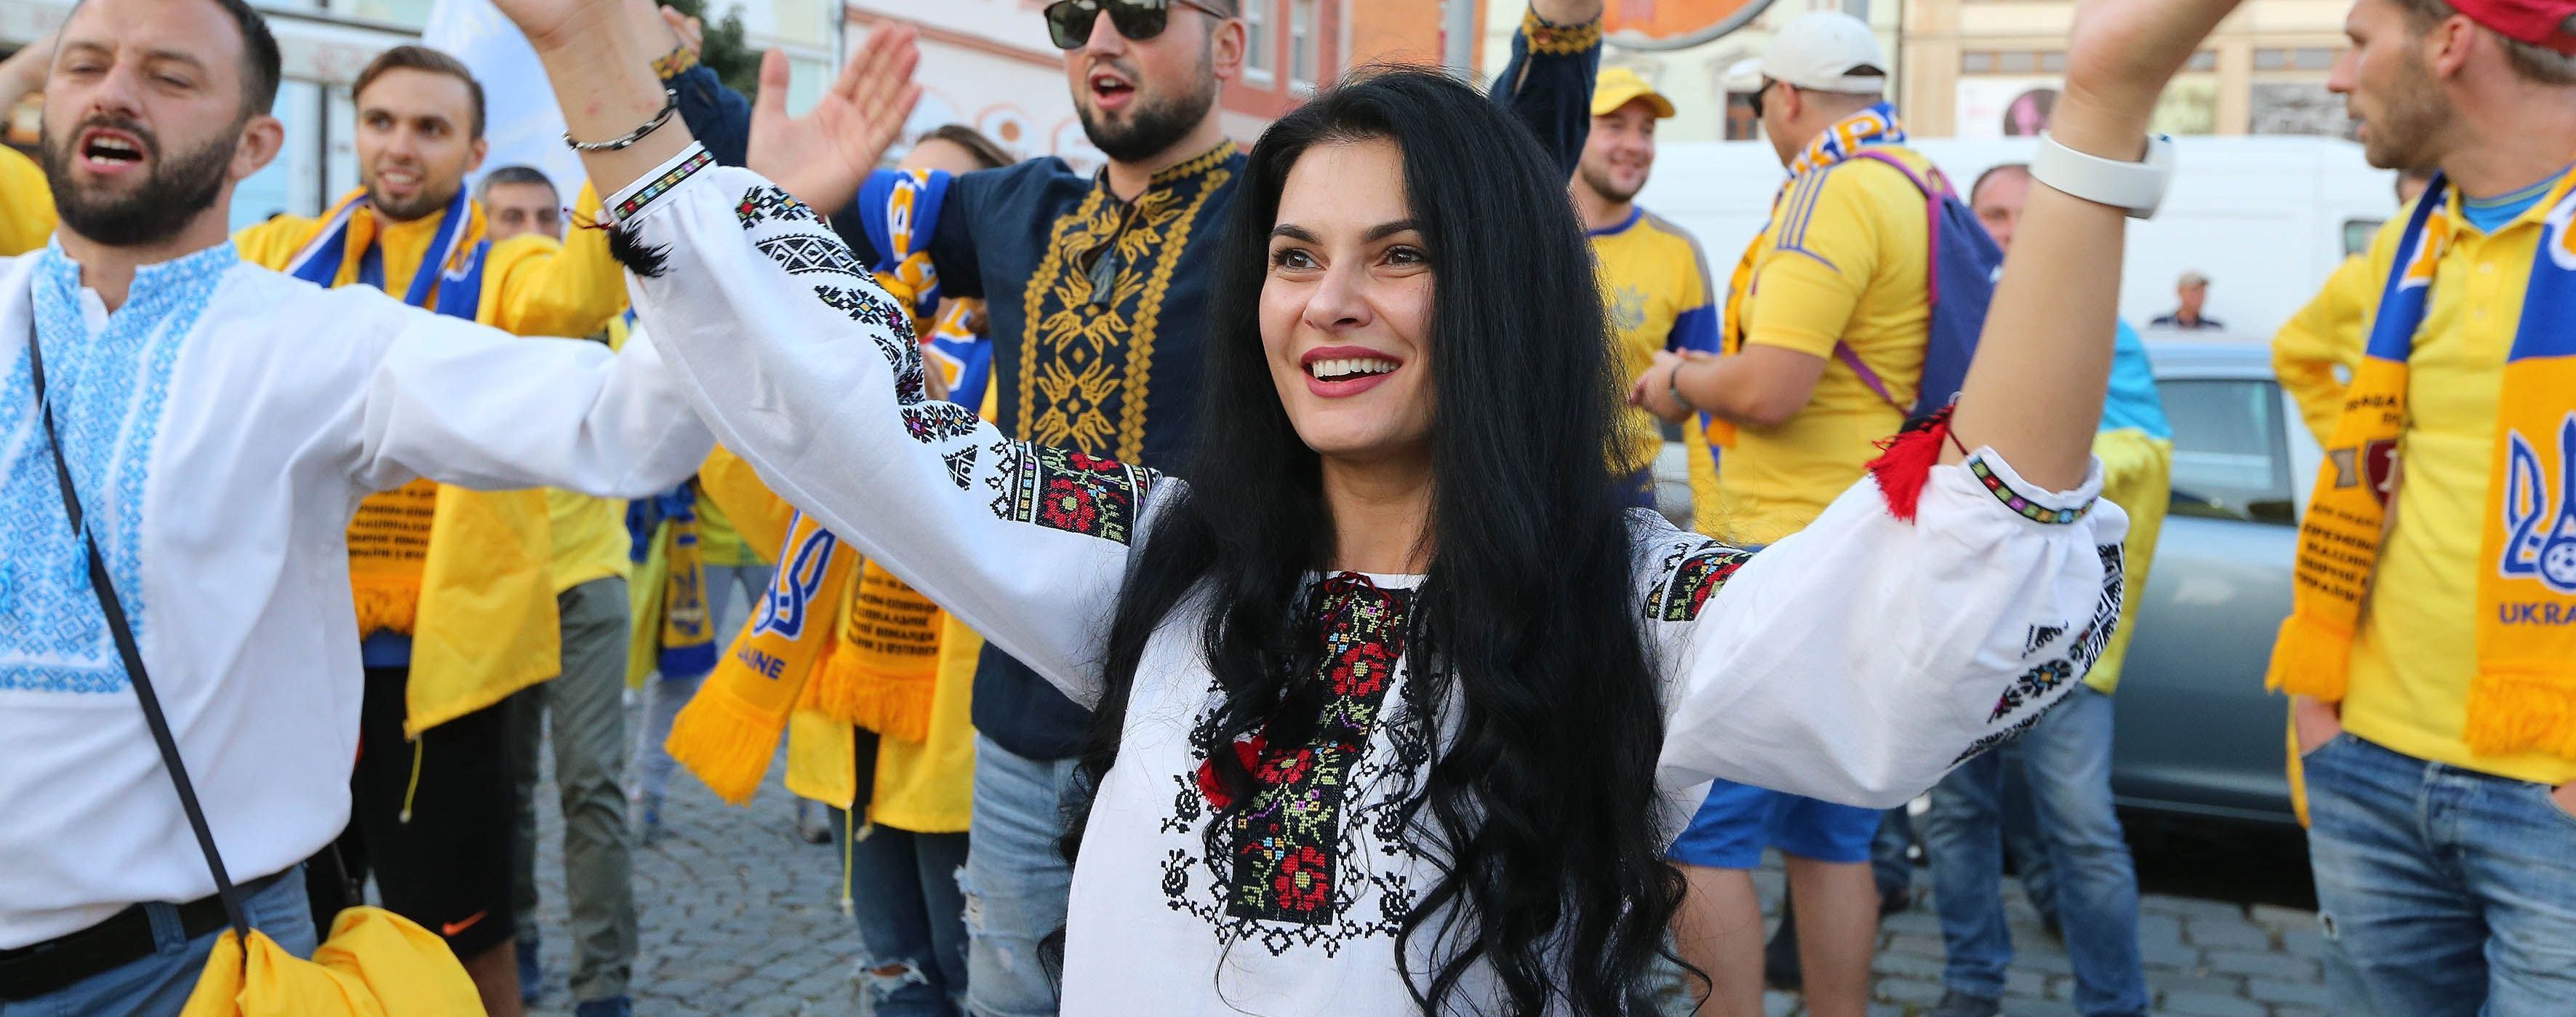 "Ми приїхали і перемогли!" Фанати гучно підтримали збірну України в Чехії